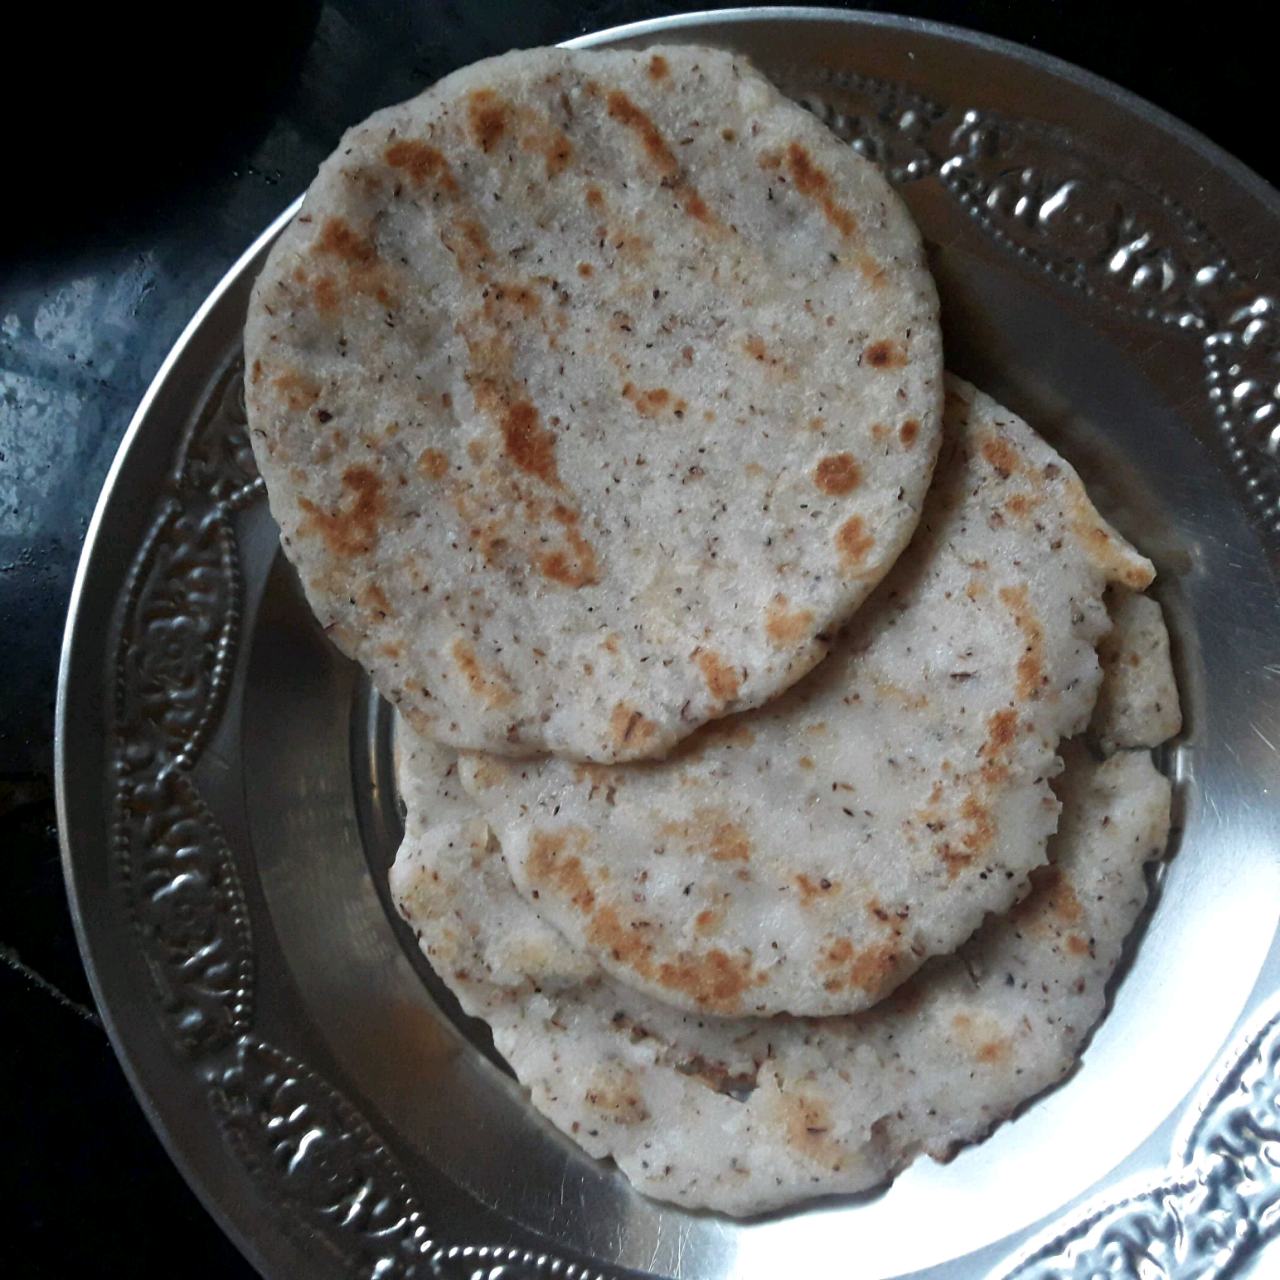 அரிசி மாவு ரொட்டி/Rice Flour Rotti